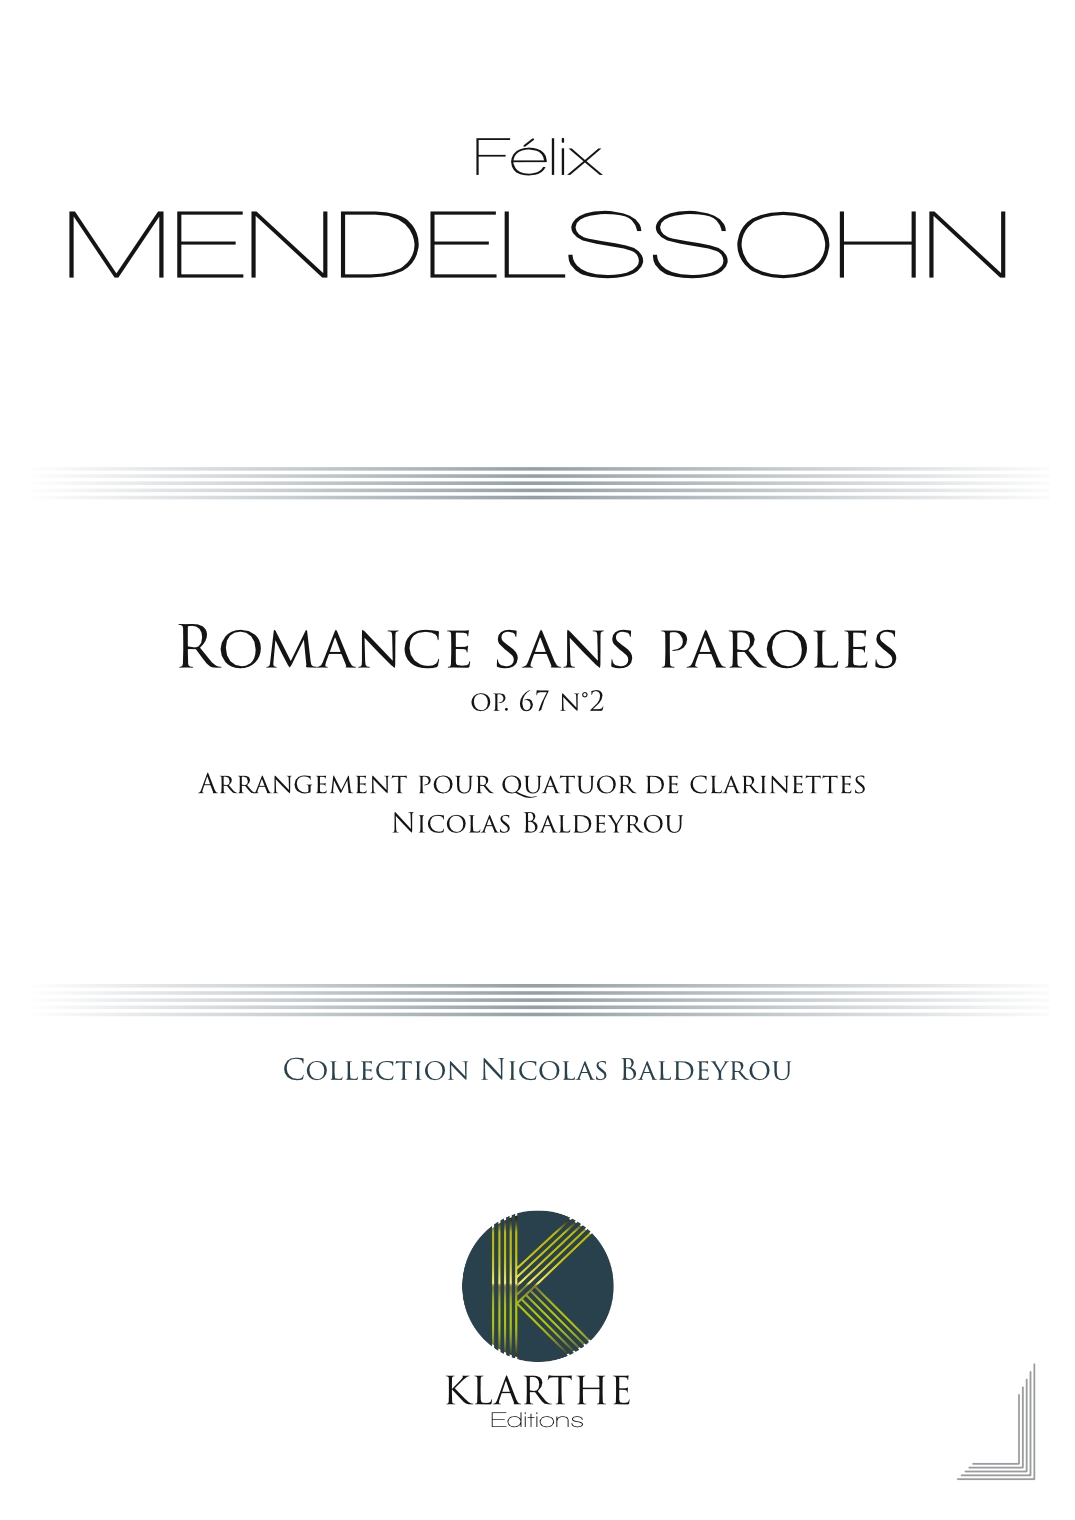 Romance sans paroles opus 67, n2 (MENDELSSOHN-BARTHOLDY FELIX)